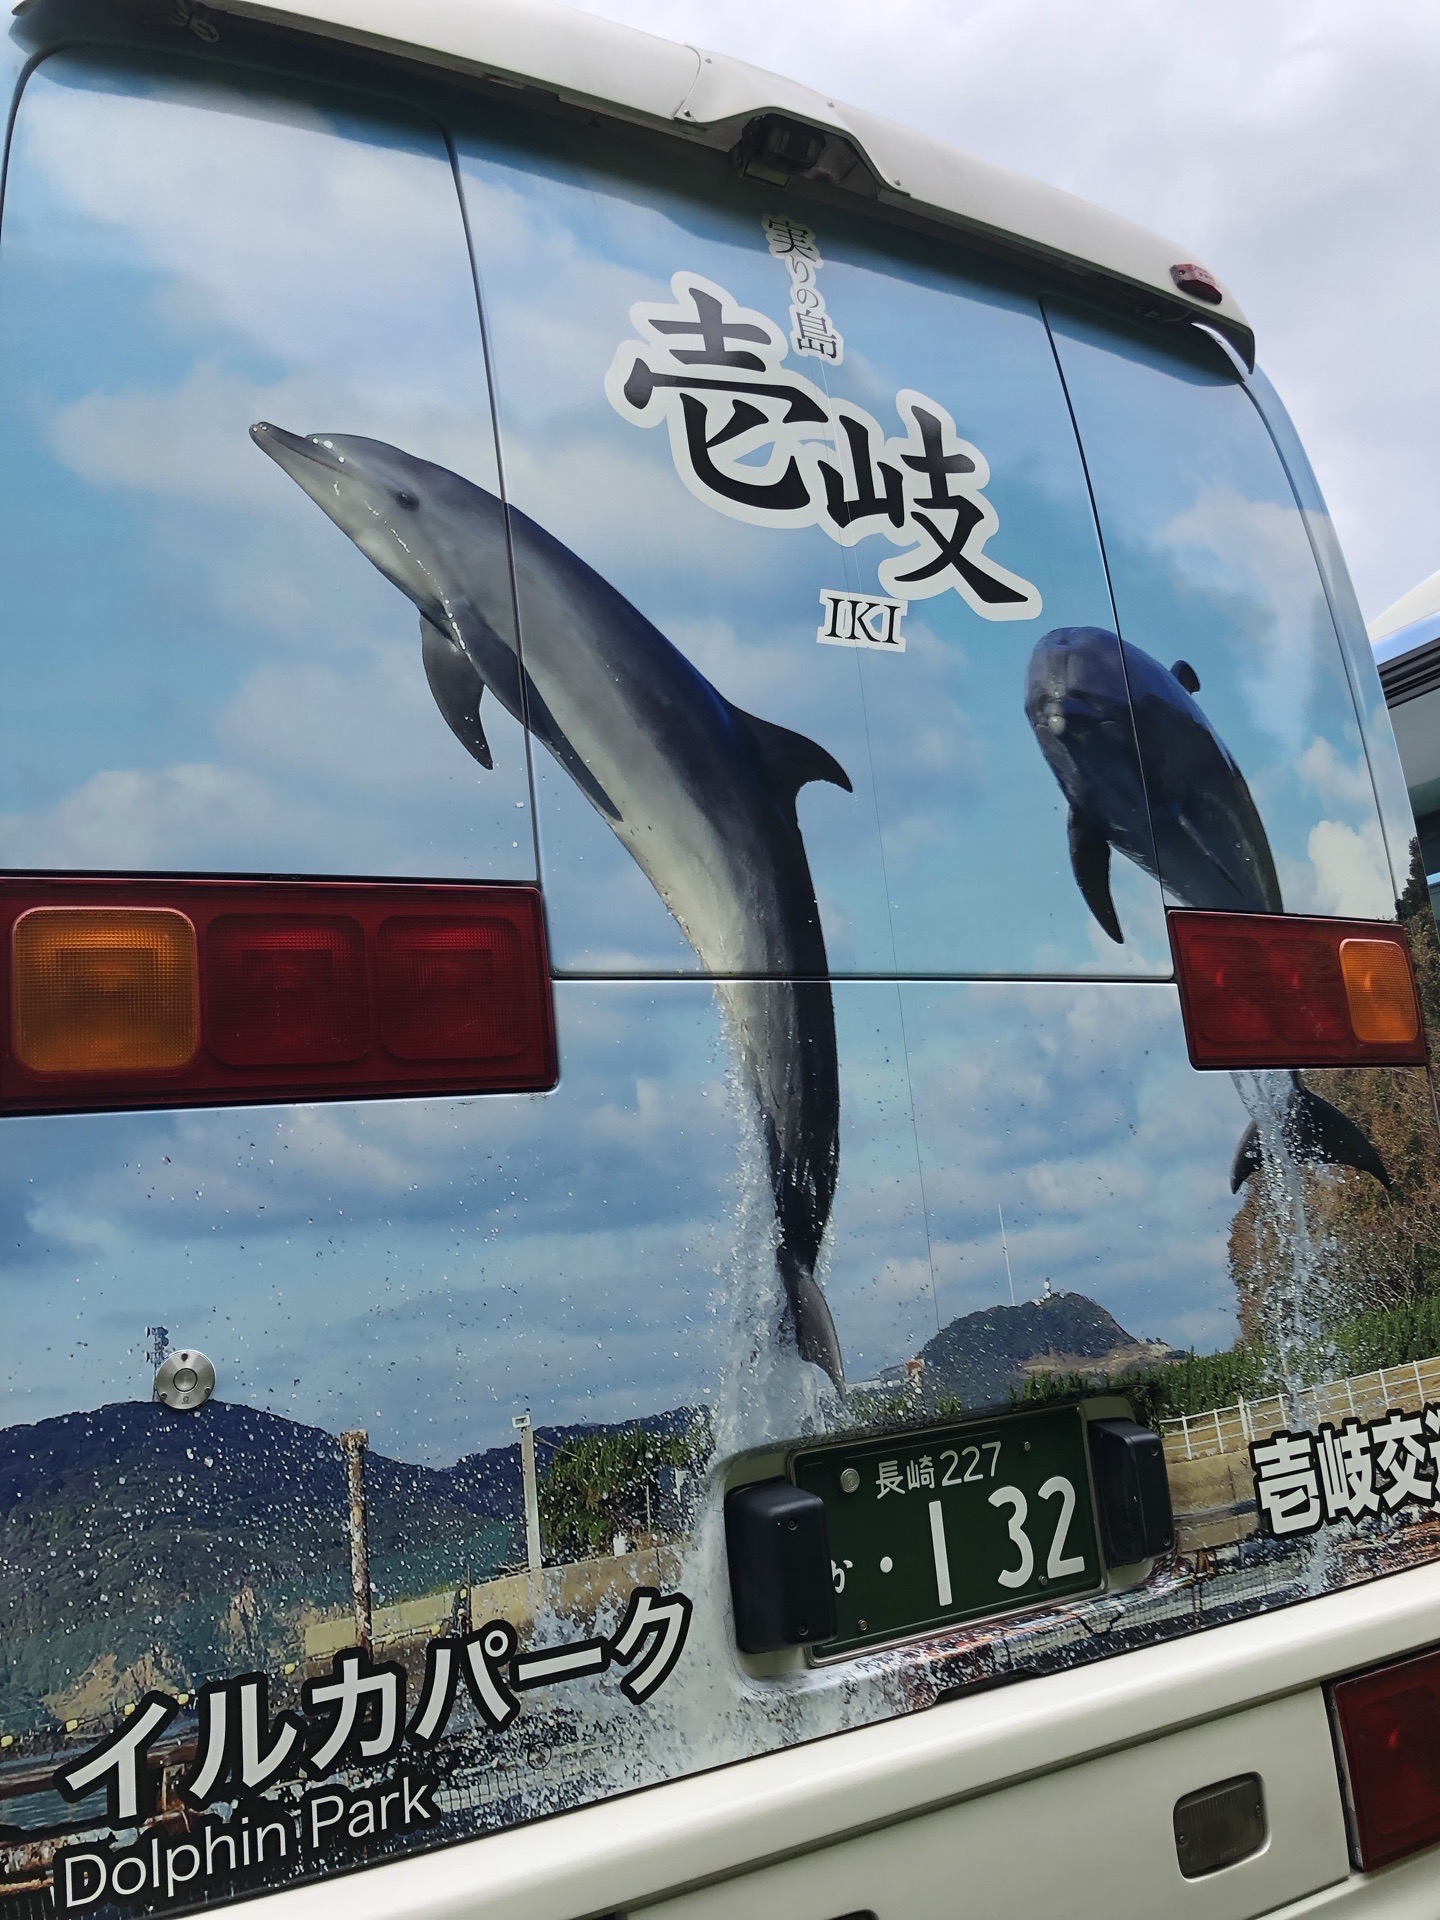 壹岐岛上的特色公交车